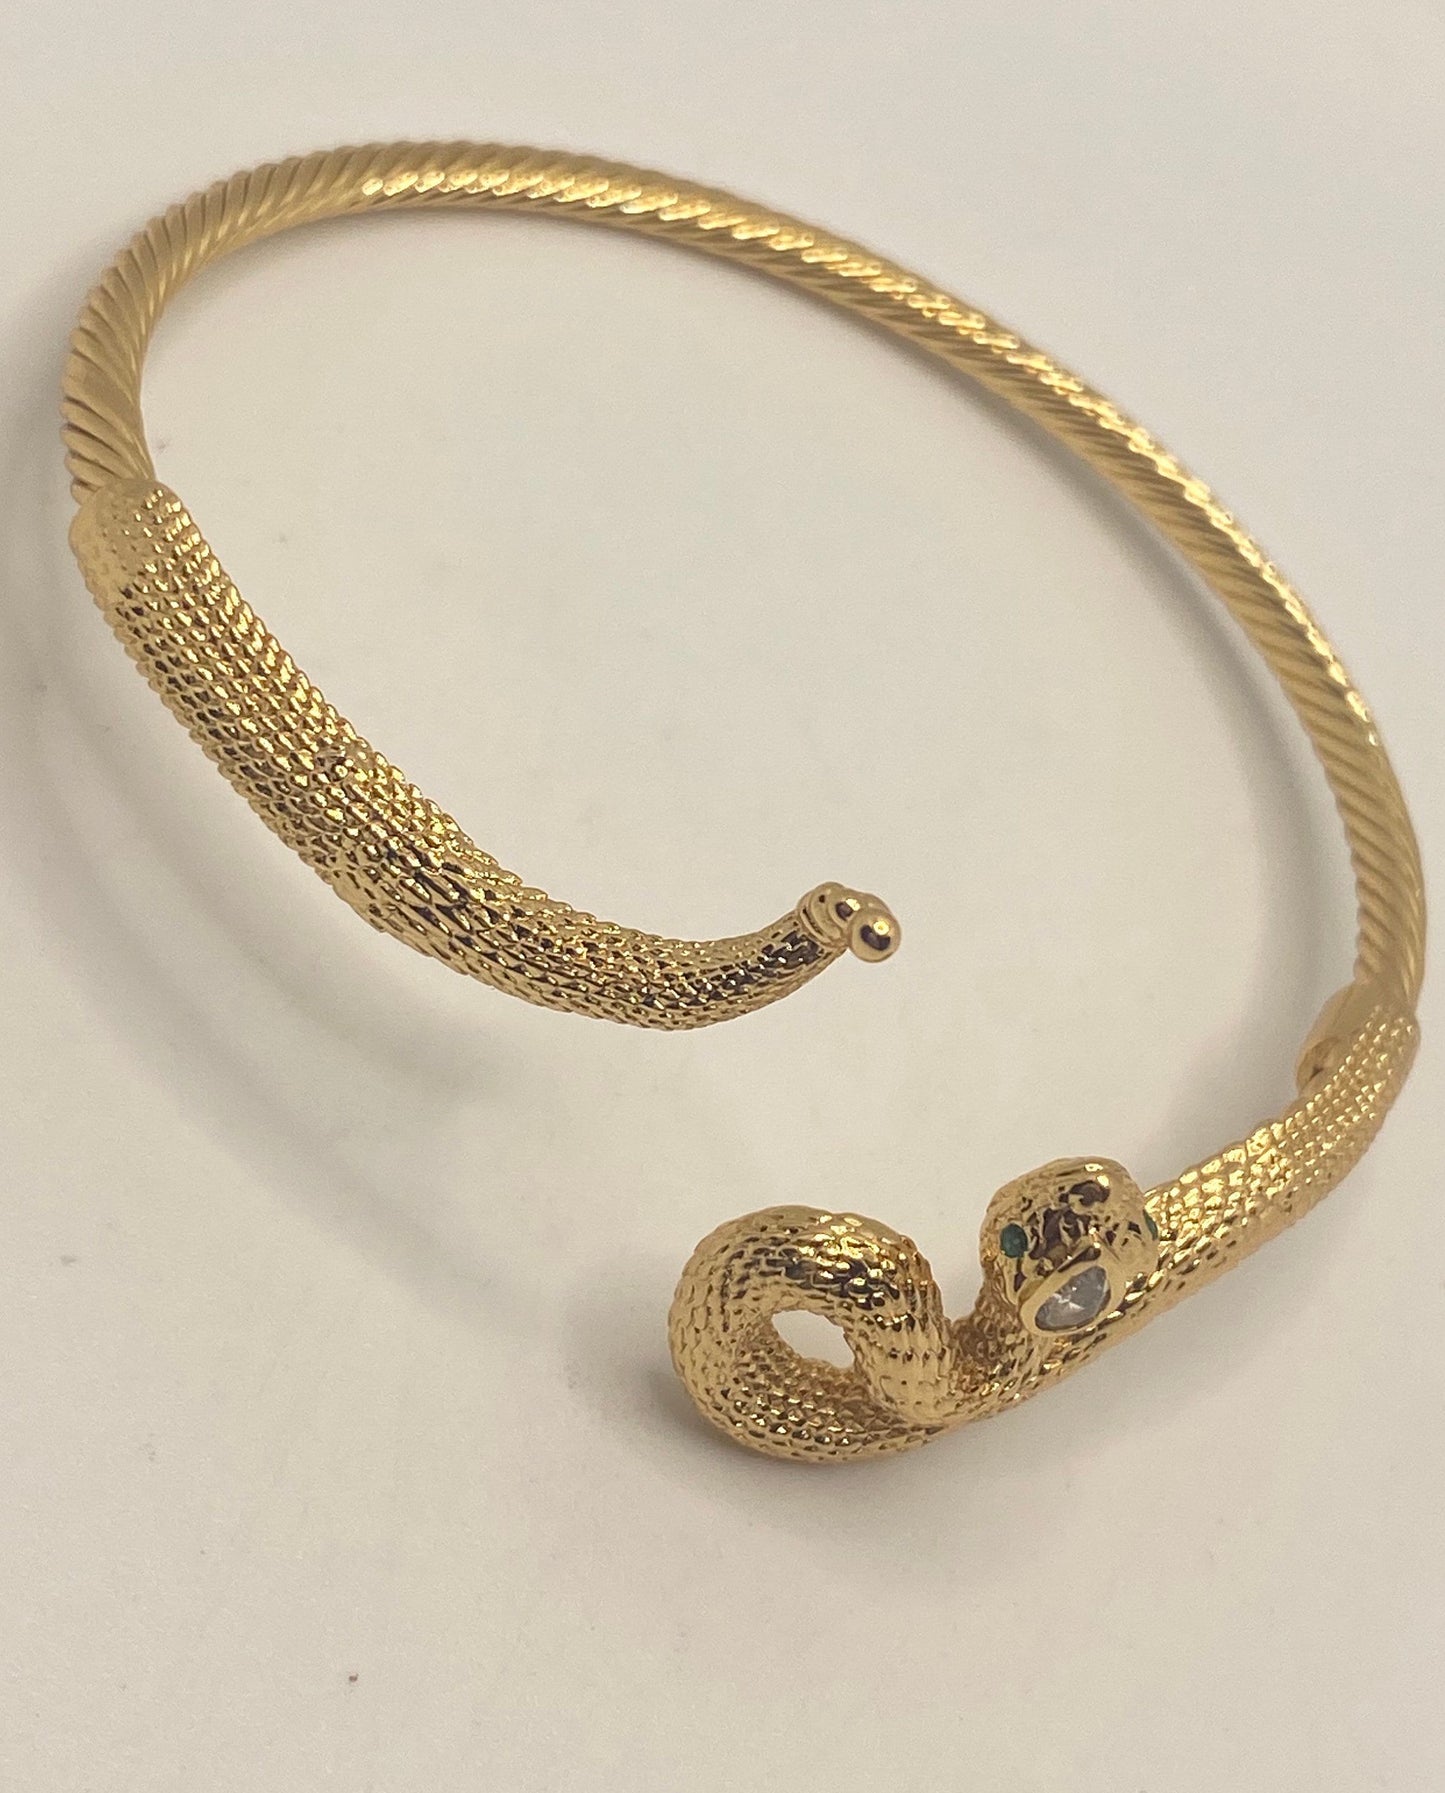 Vintage Snake Bangle Bracelet Gold Filled Green Crystal Eyes